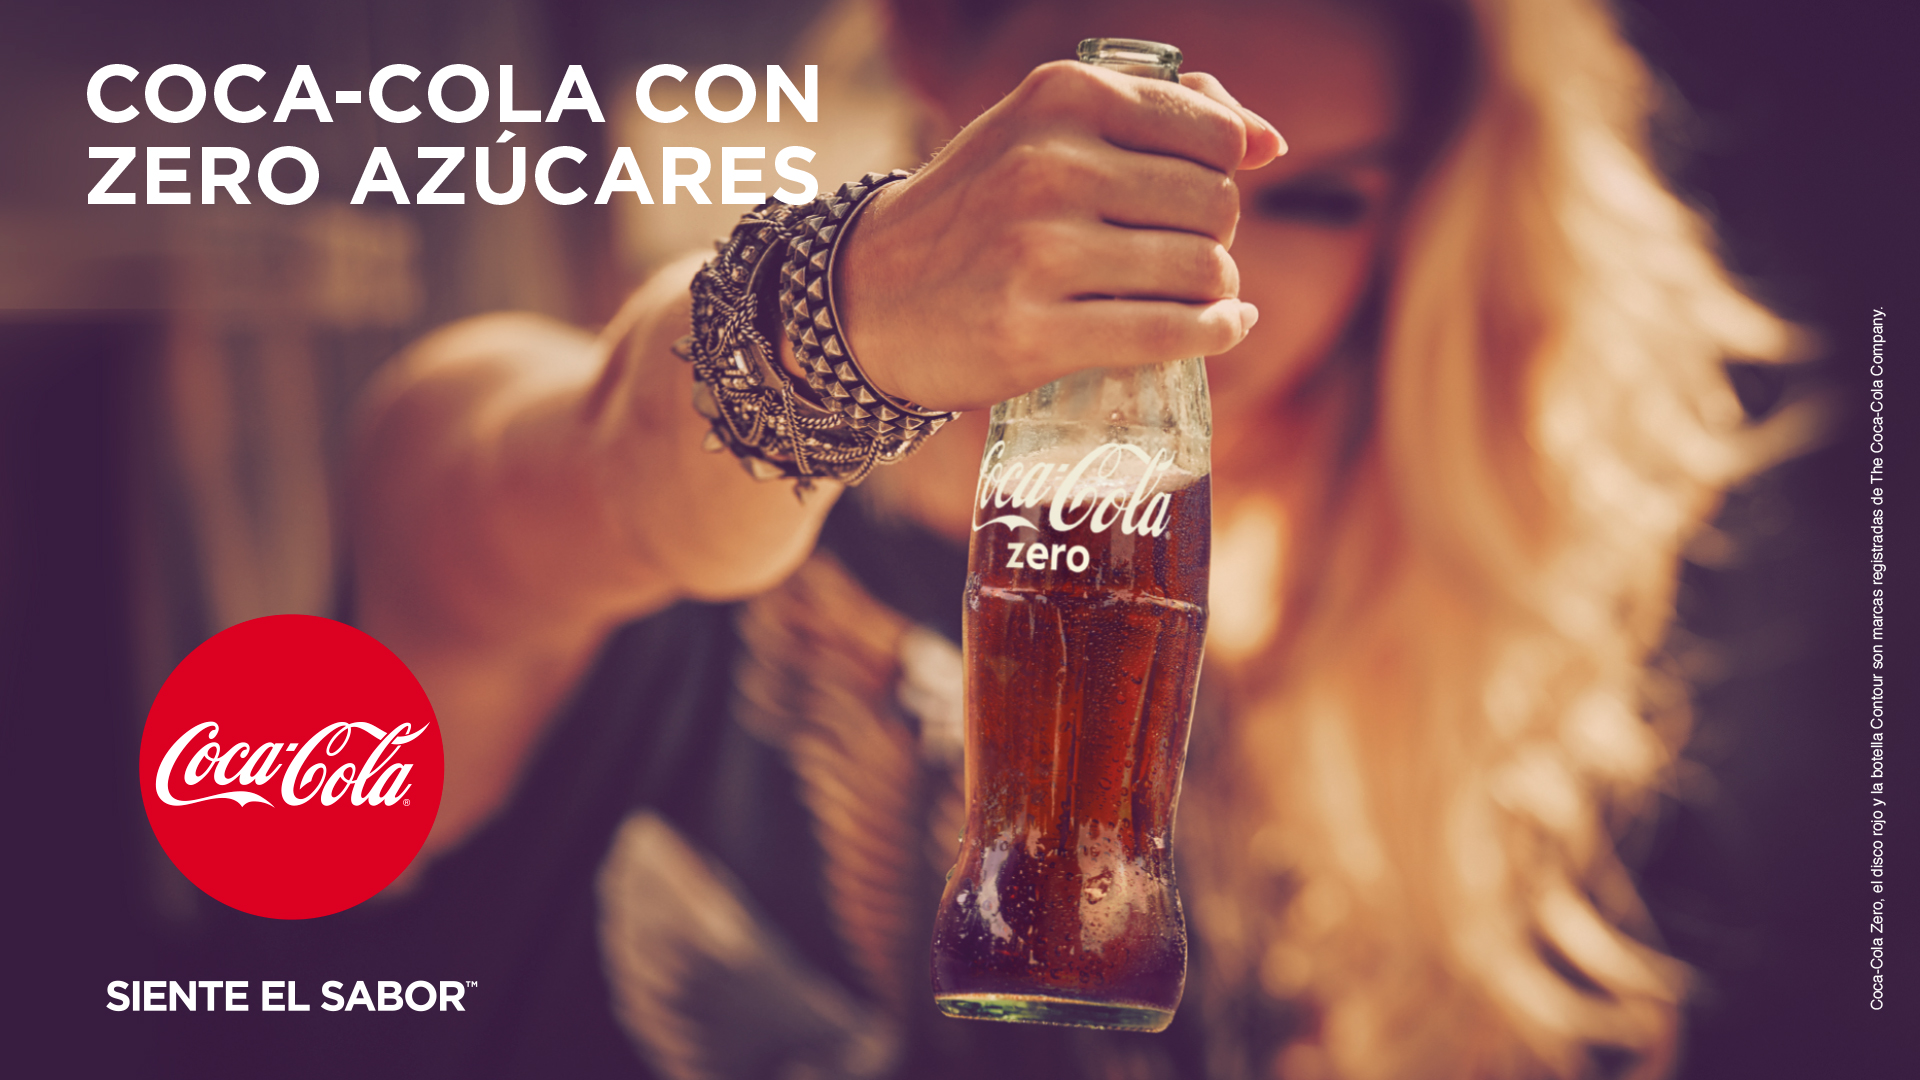 Coca-Cola Zero sin cafeína estrena campaña de la mano de McCann - Periódico  PublicidAD - Periódico de Publicidad, Comunicación Comercial y Marketing